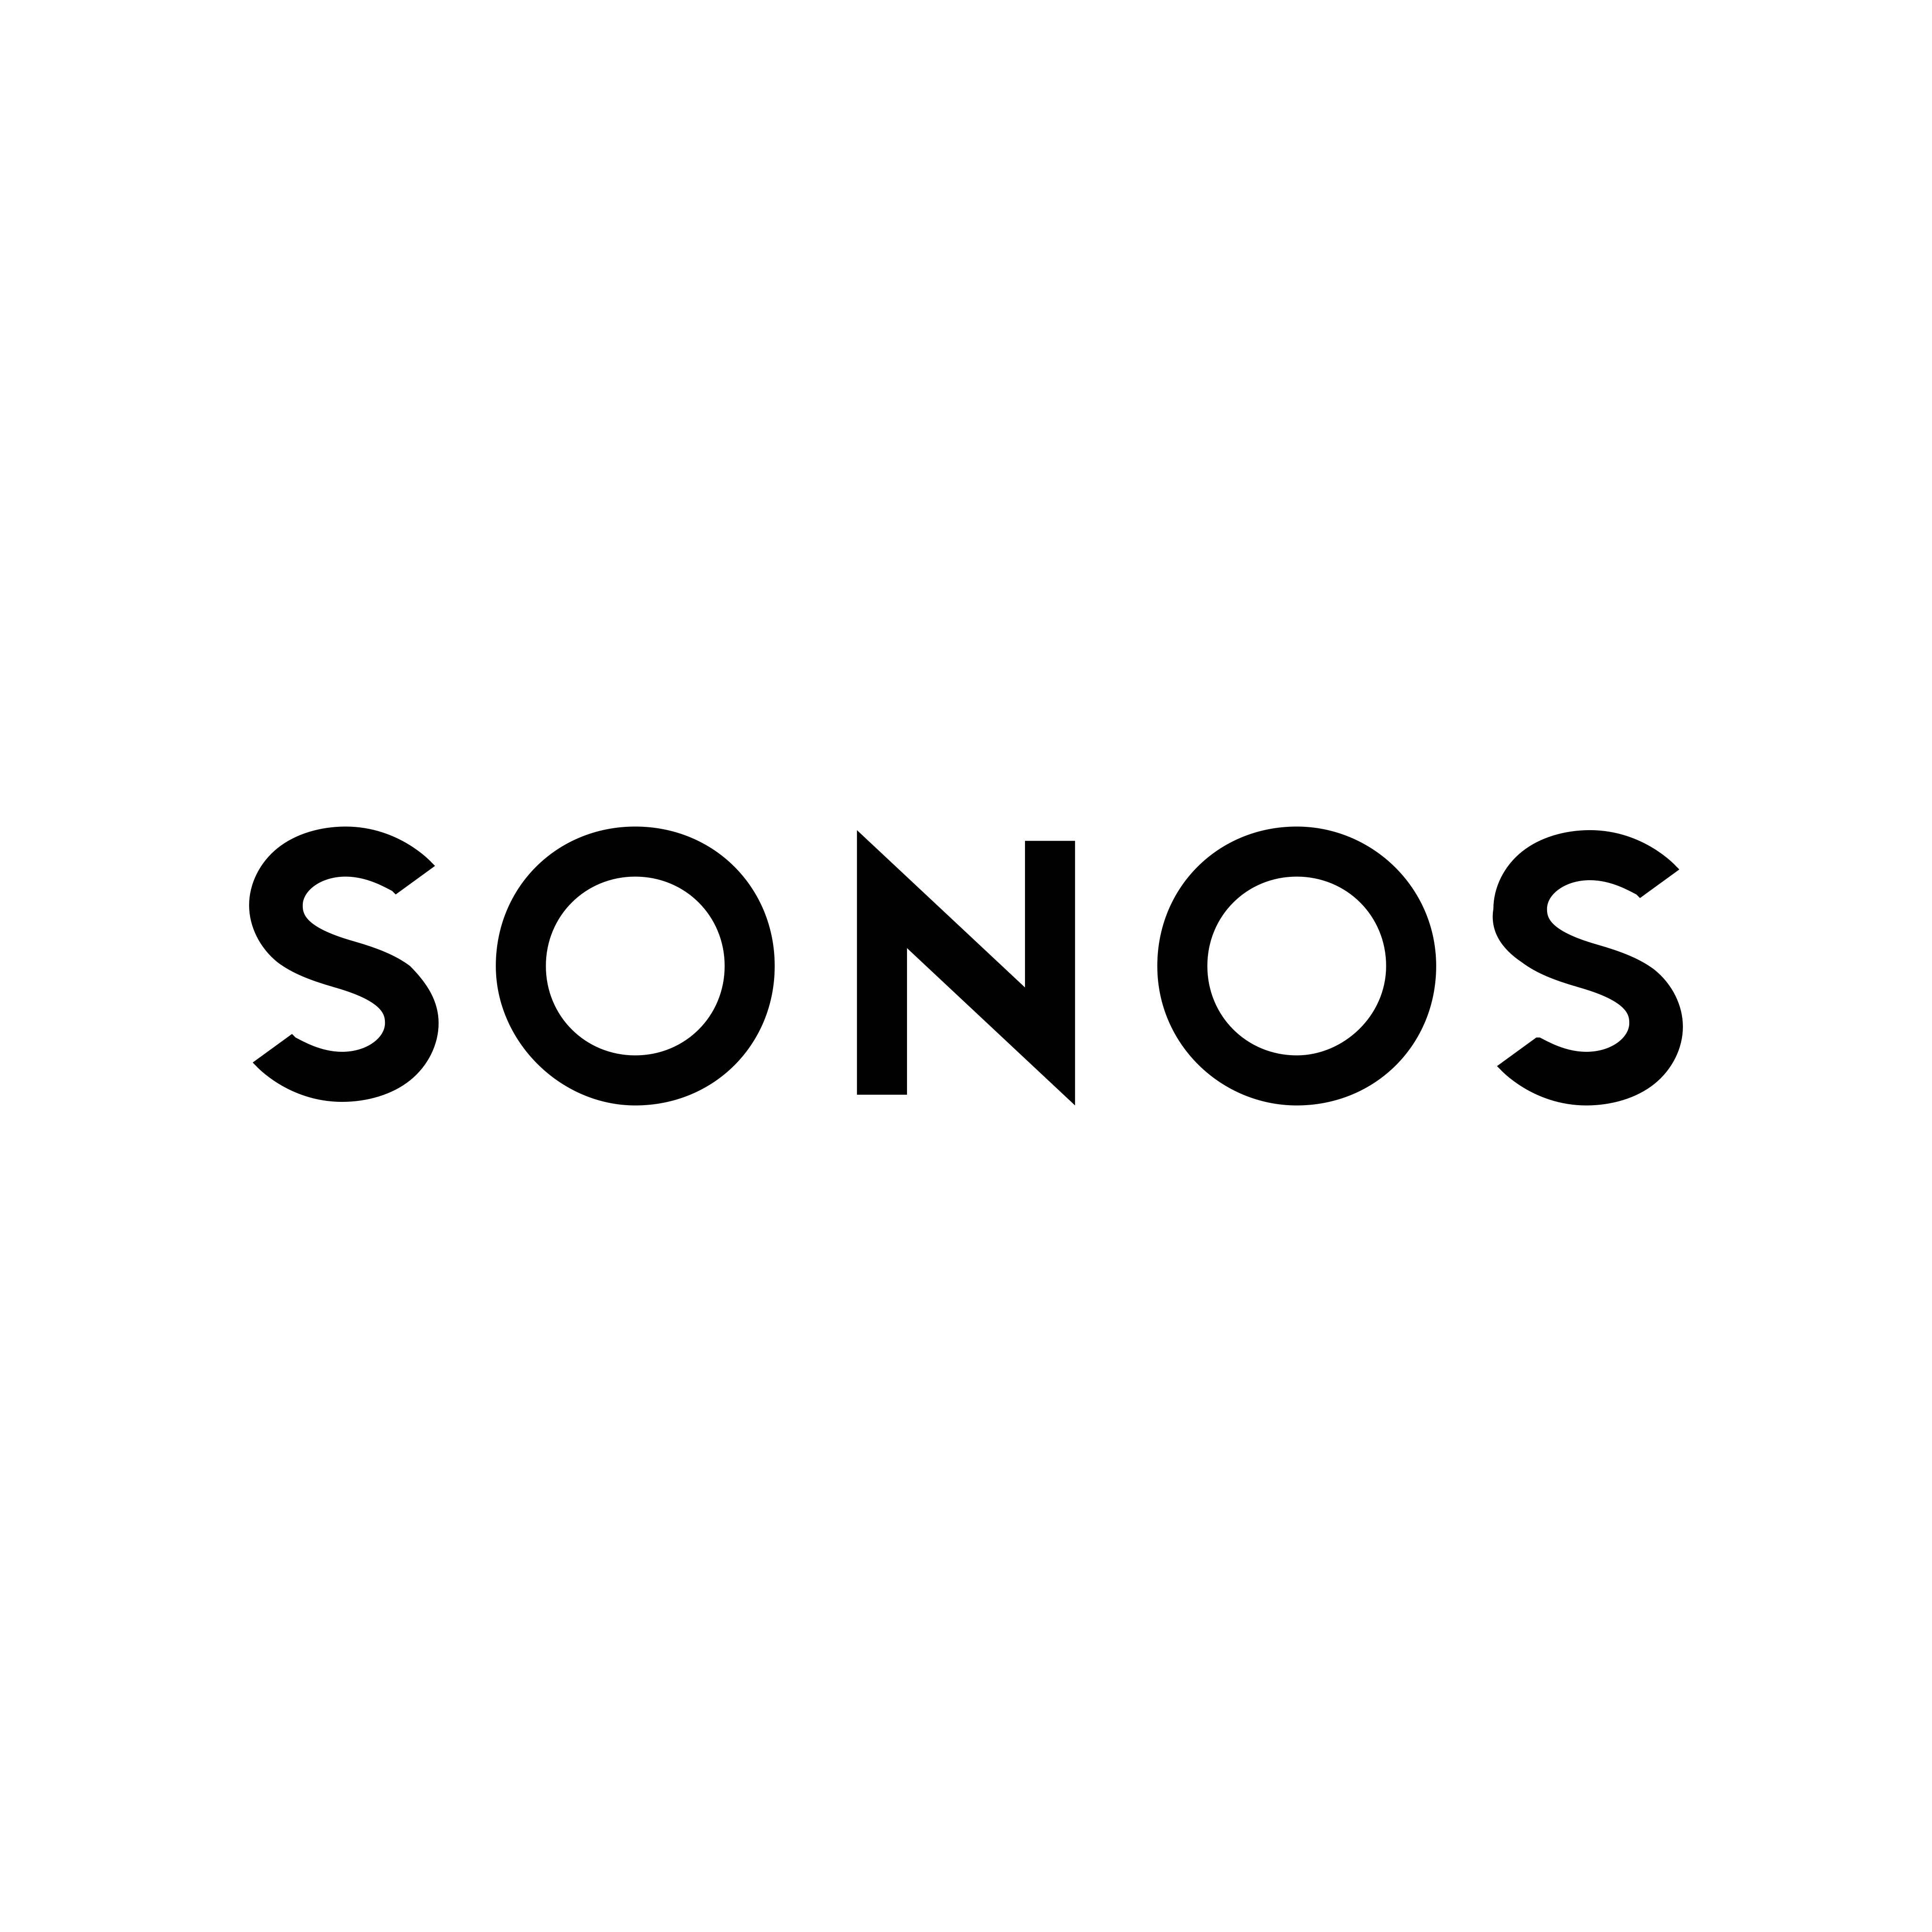 sonos logo 0 - Sonos Logo